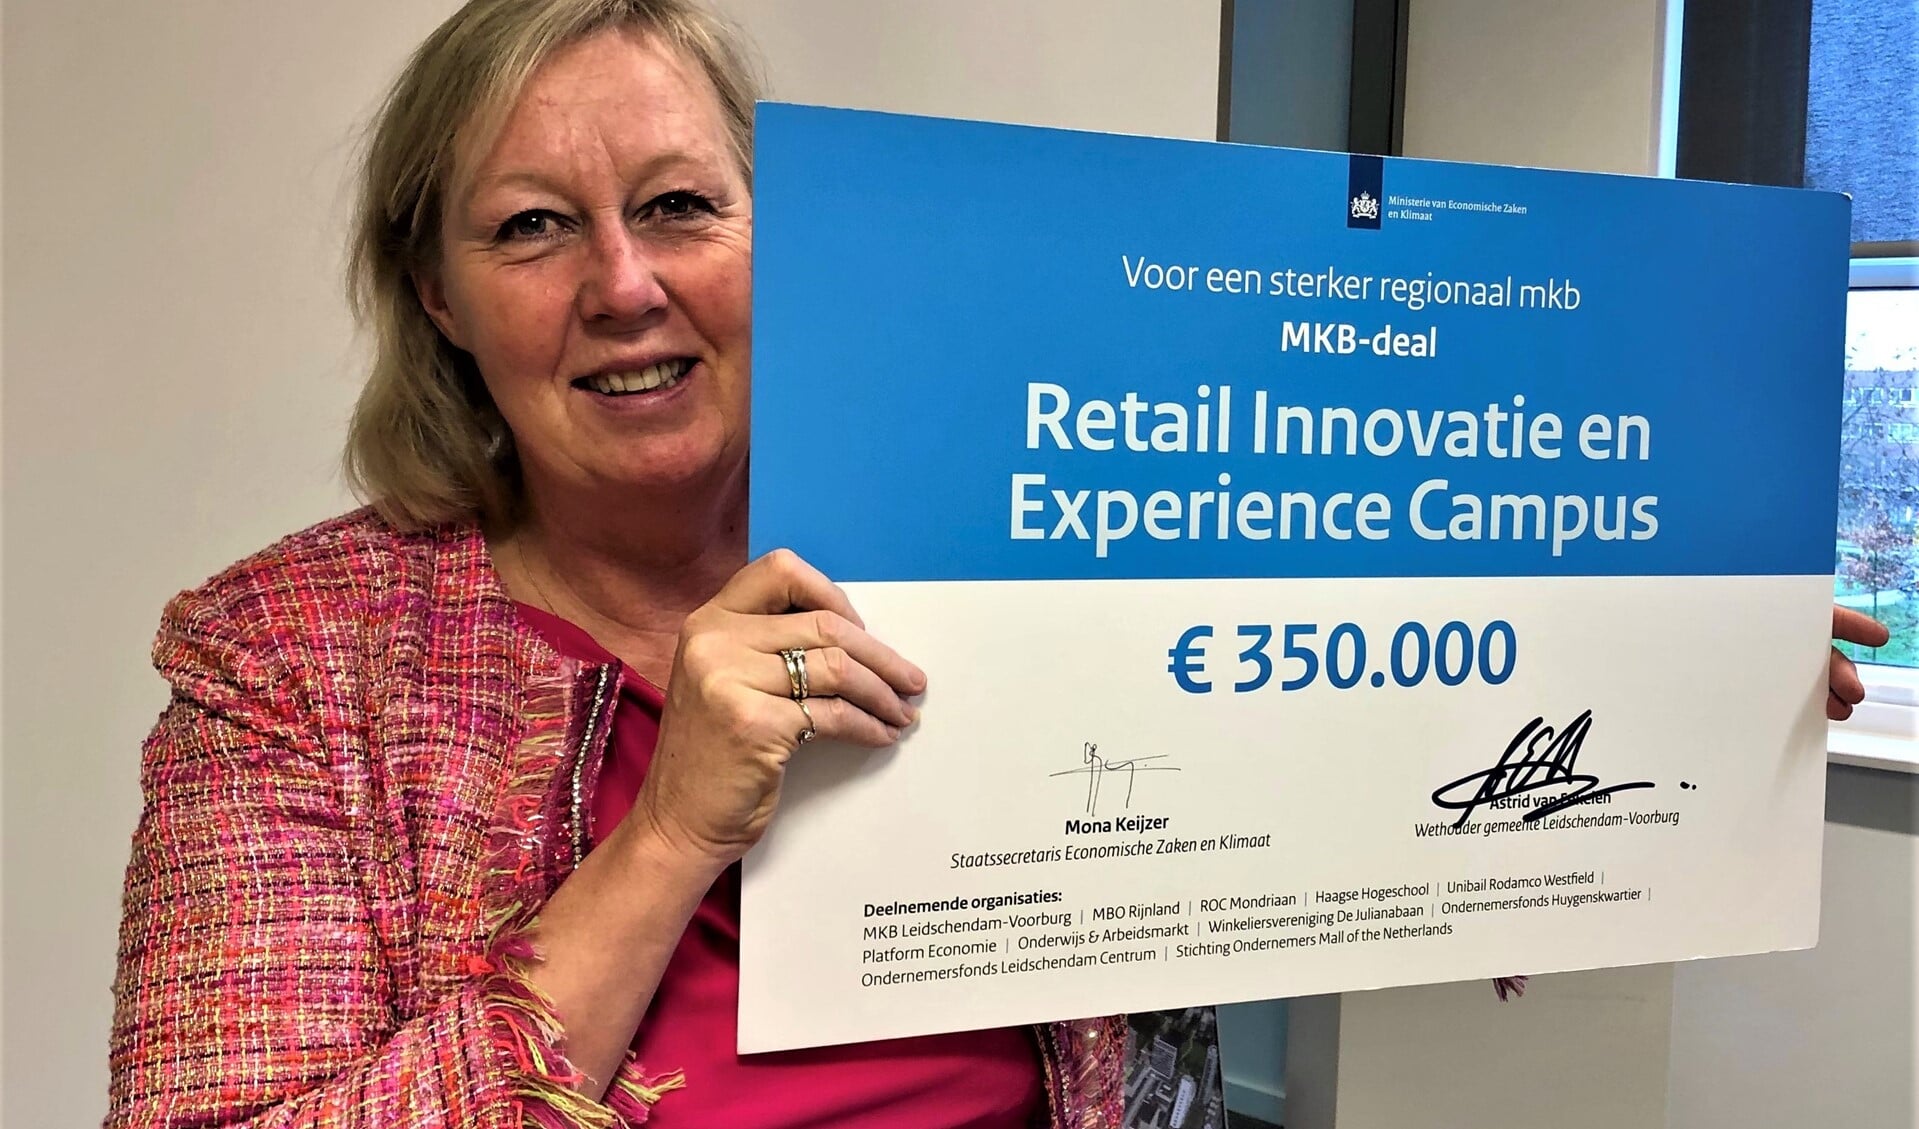 Er gaat 350.000 euro naar de MKB-deal Retail Innovatie en Experience Campus die gemeente Leidschendam-Voorburg namens 15 partijen heeft ingediend (foto: gemeente LV).